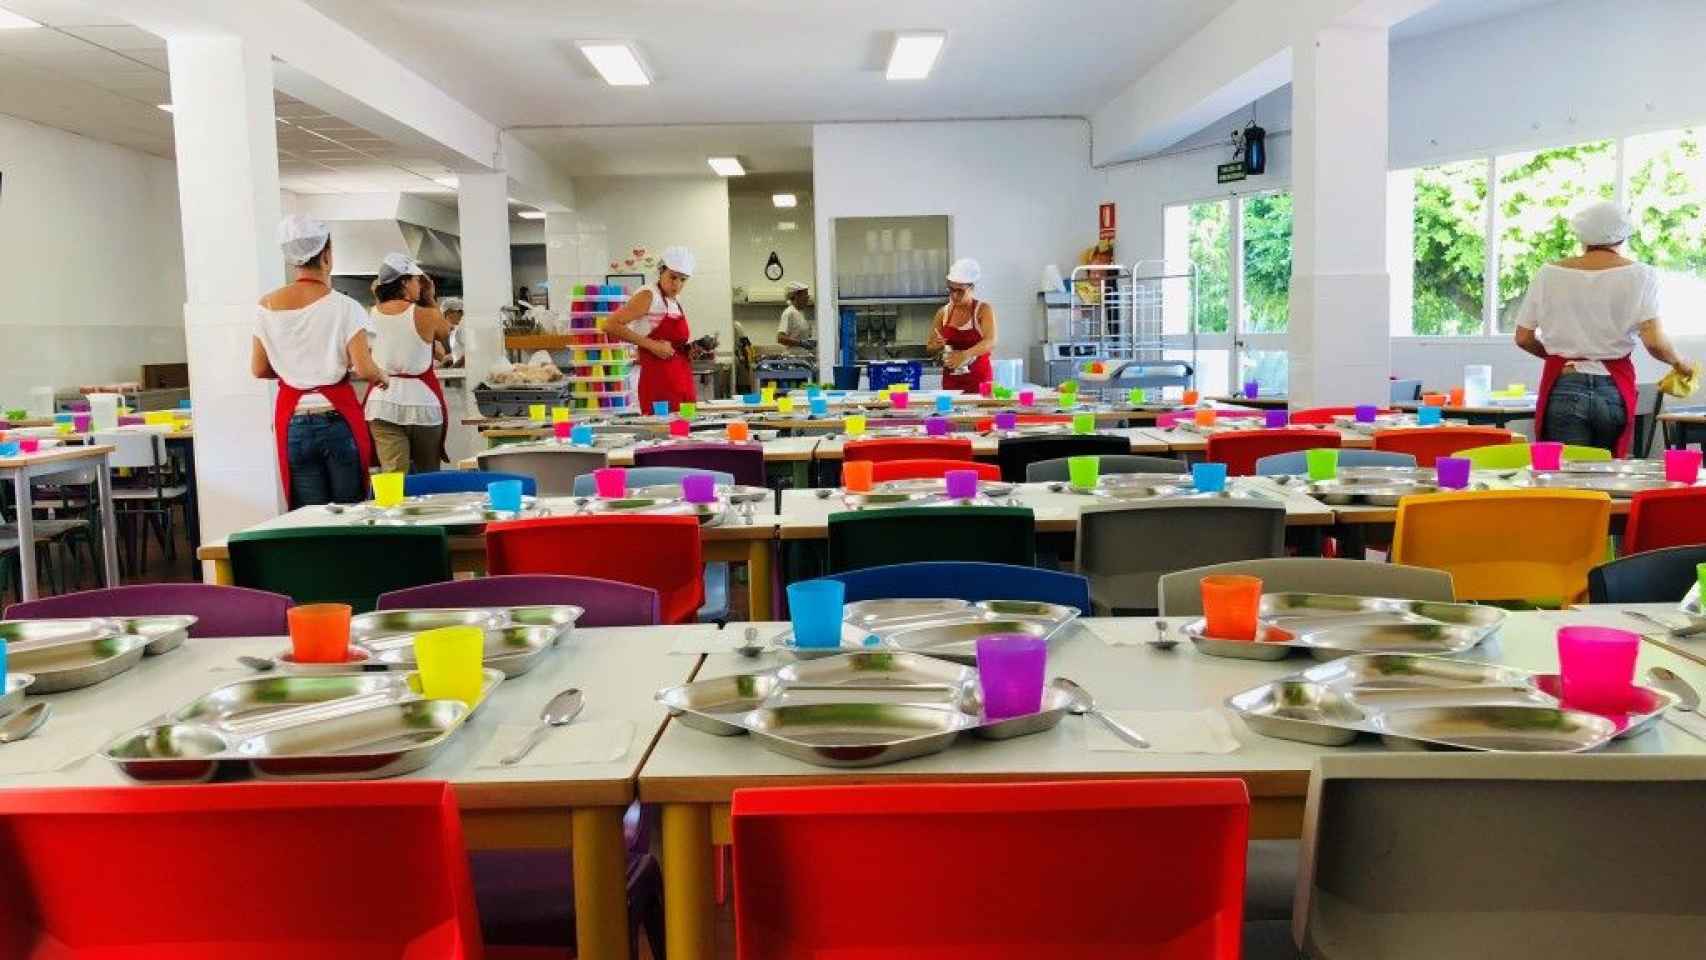 Sala de un comedor de una escuela infantil